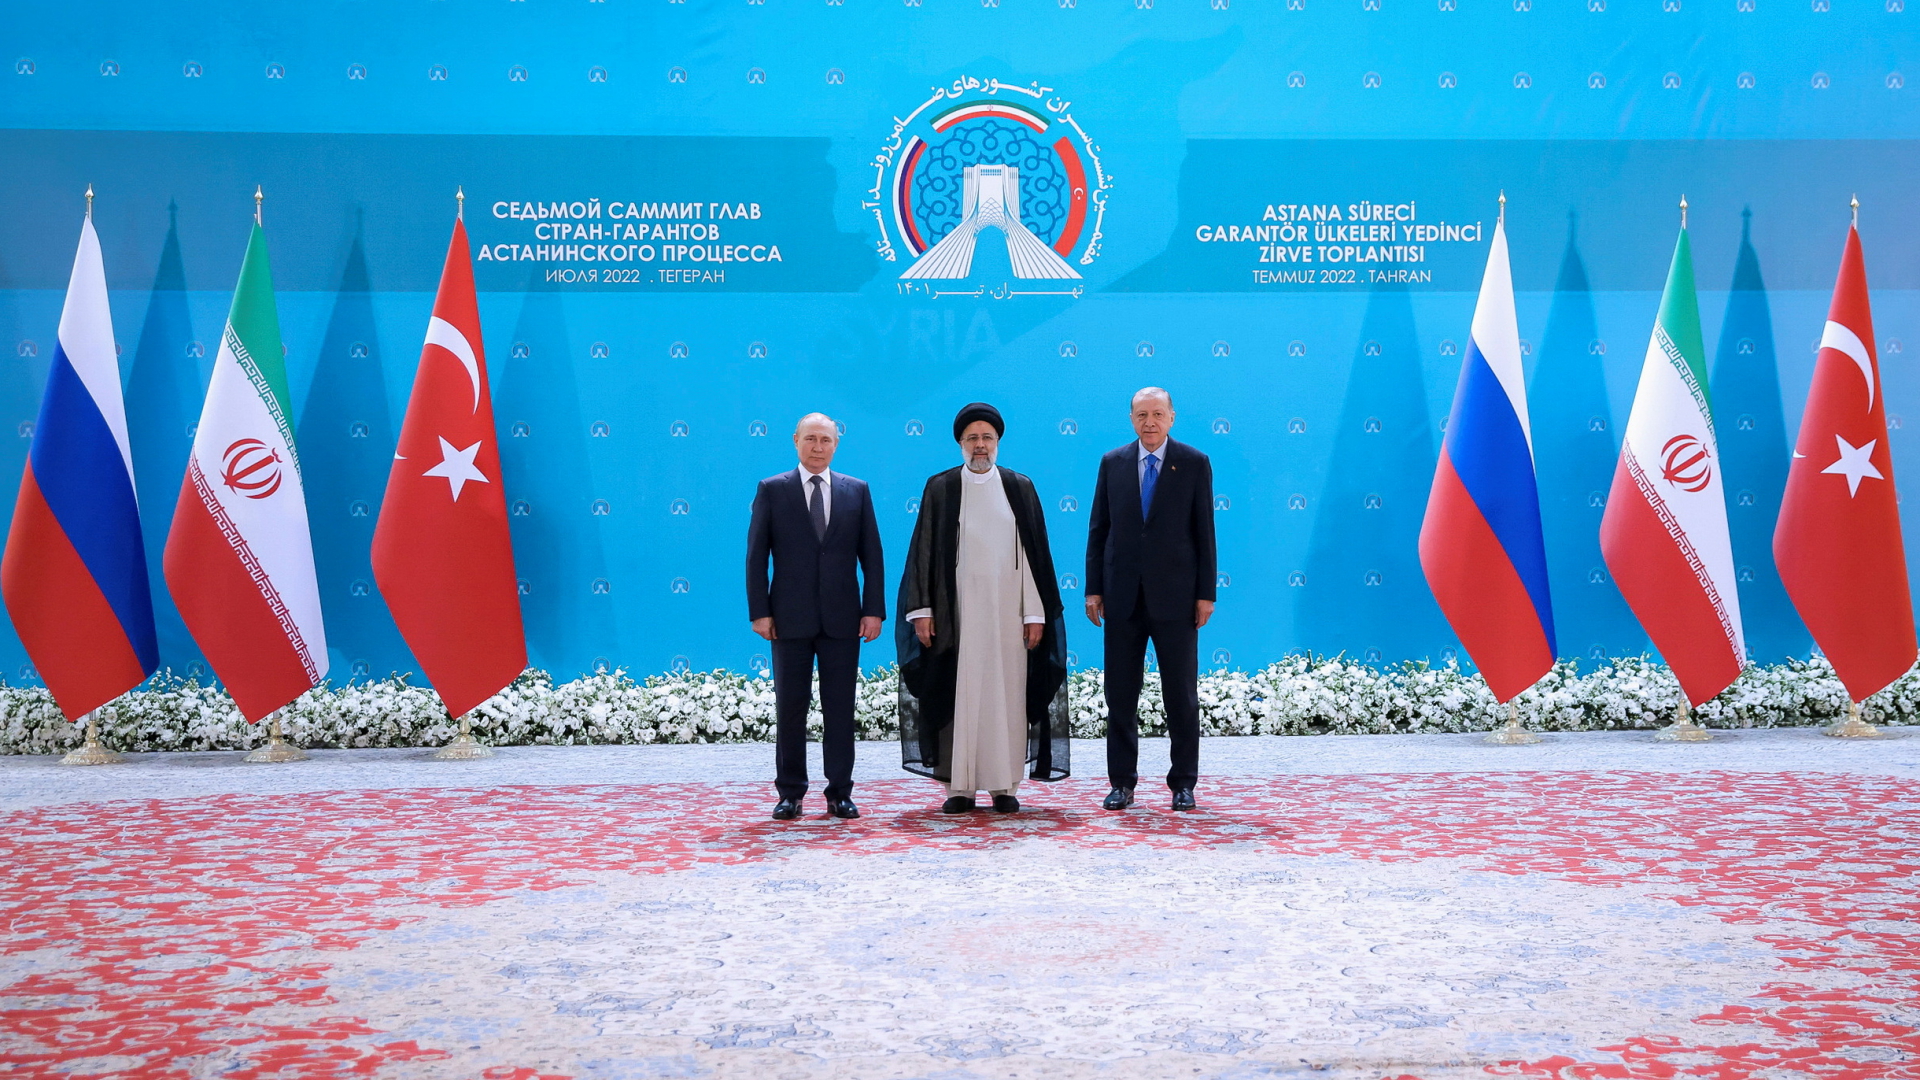 Der russische Präsident Wladimir Putin mit seinem iranischen Amtskollegen Ebrahim Raisi und dem türkischen Staatschef Recep Tayyip Erdogan. | via REUTERS